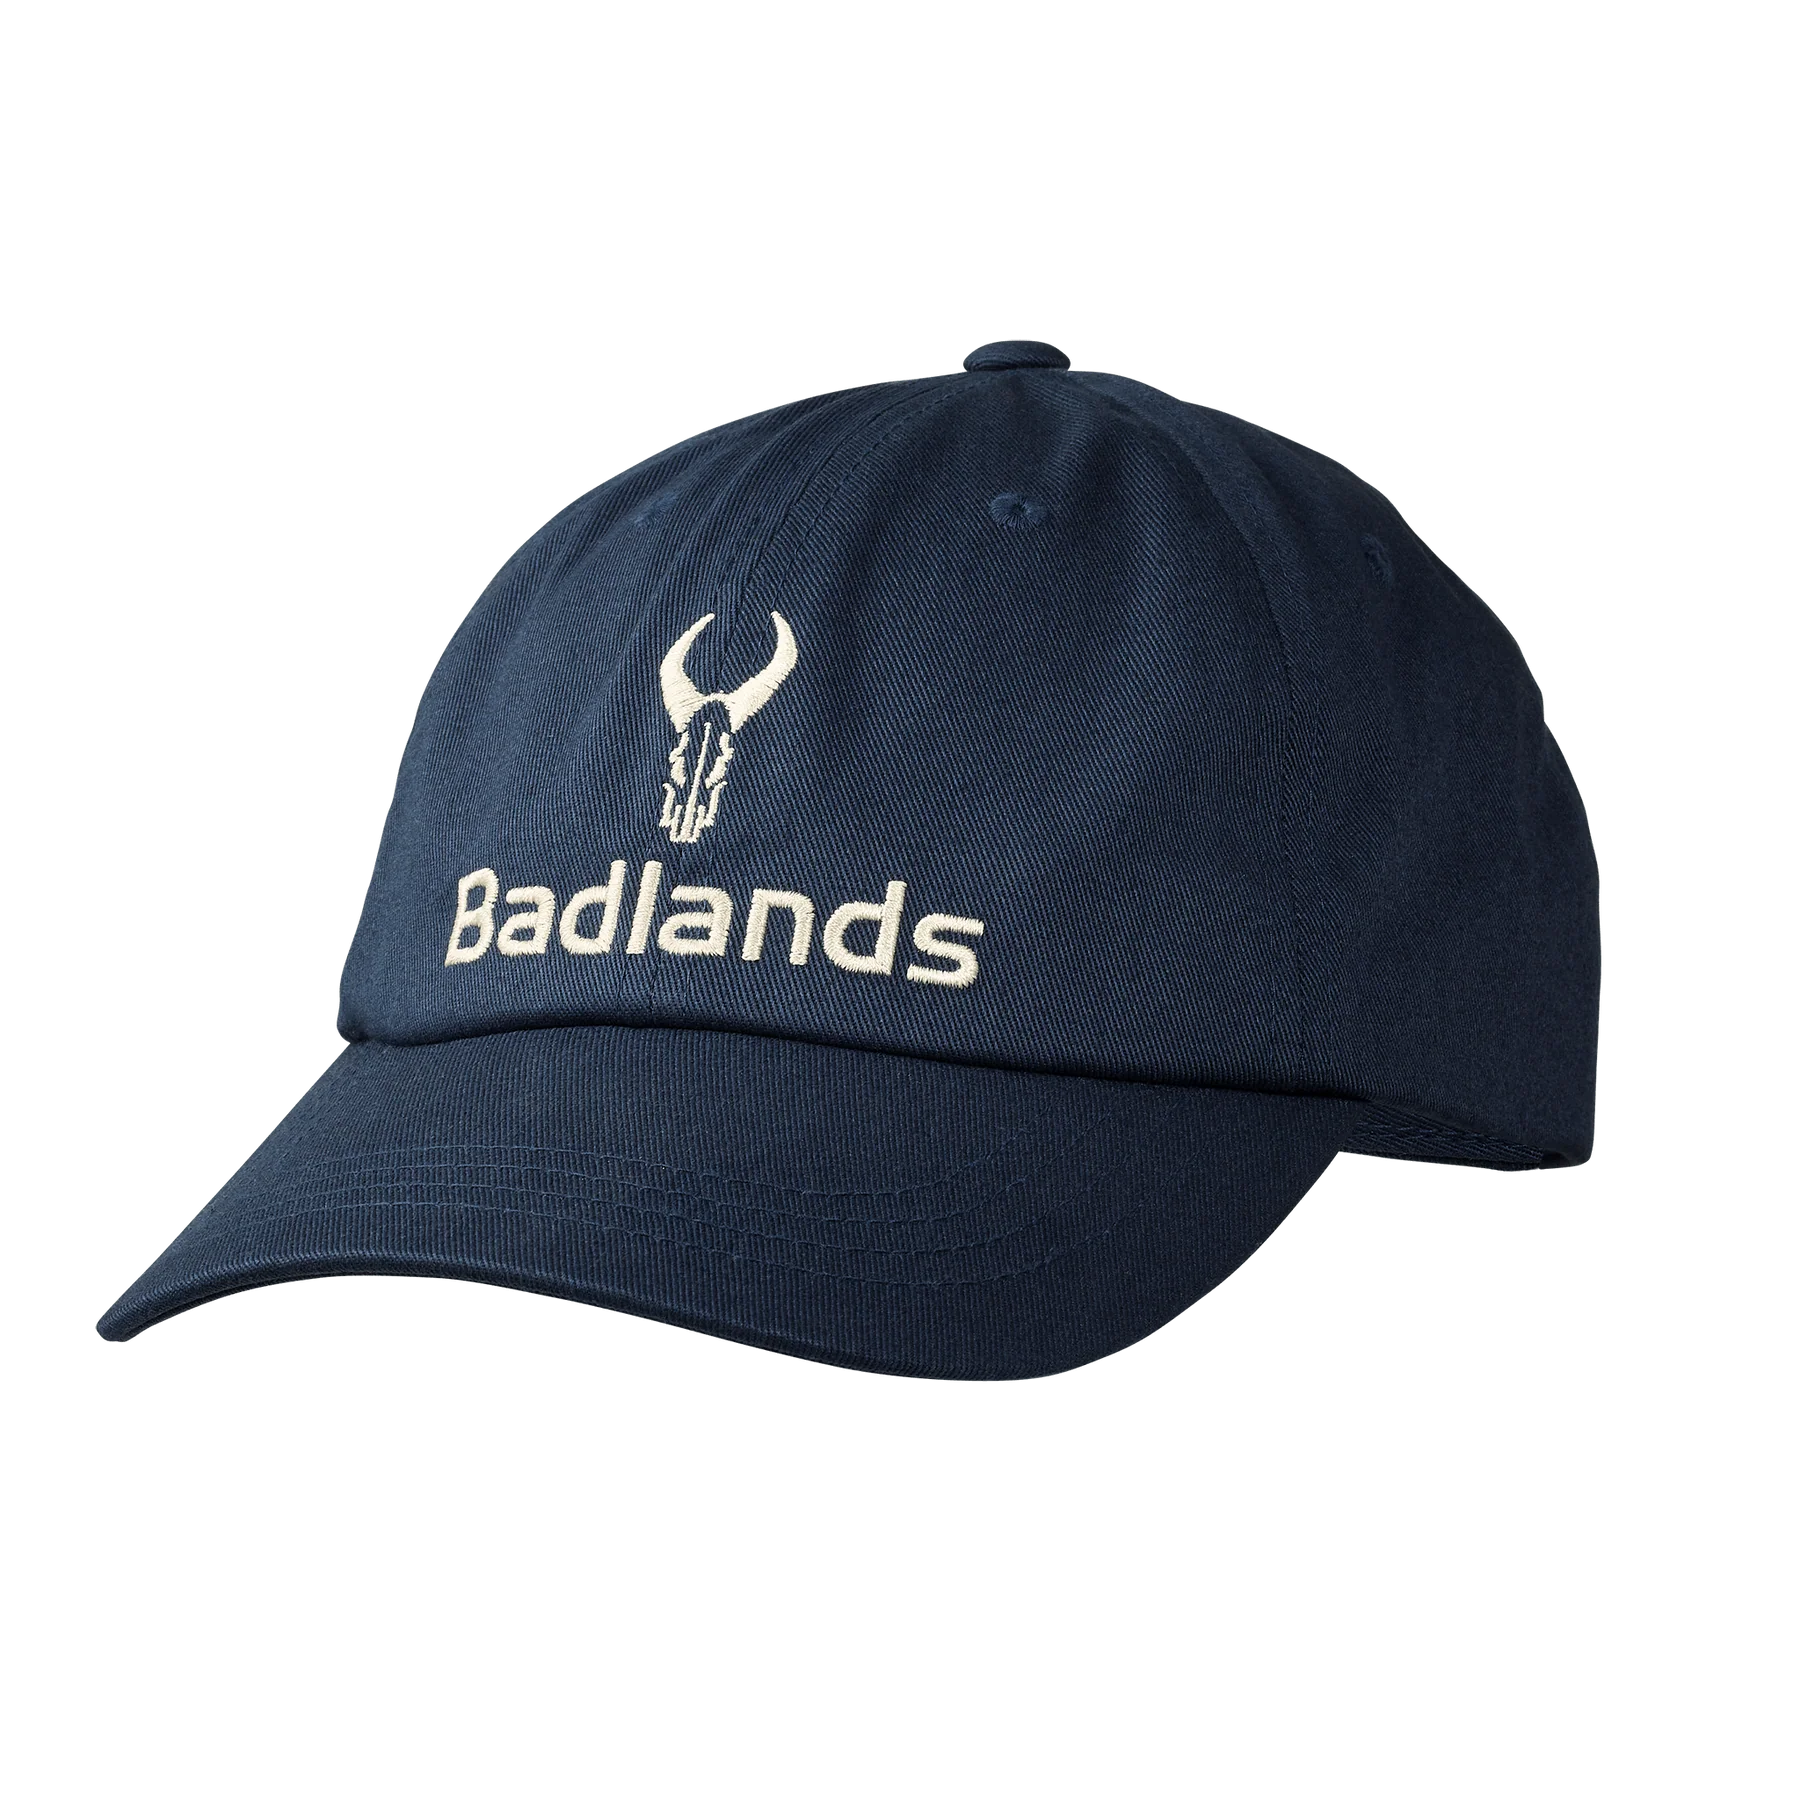 Badlands Dad Hat